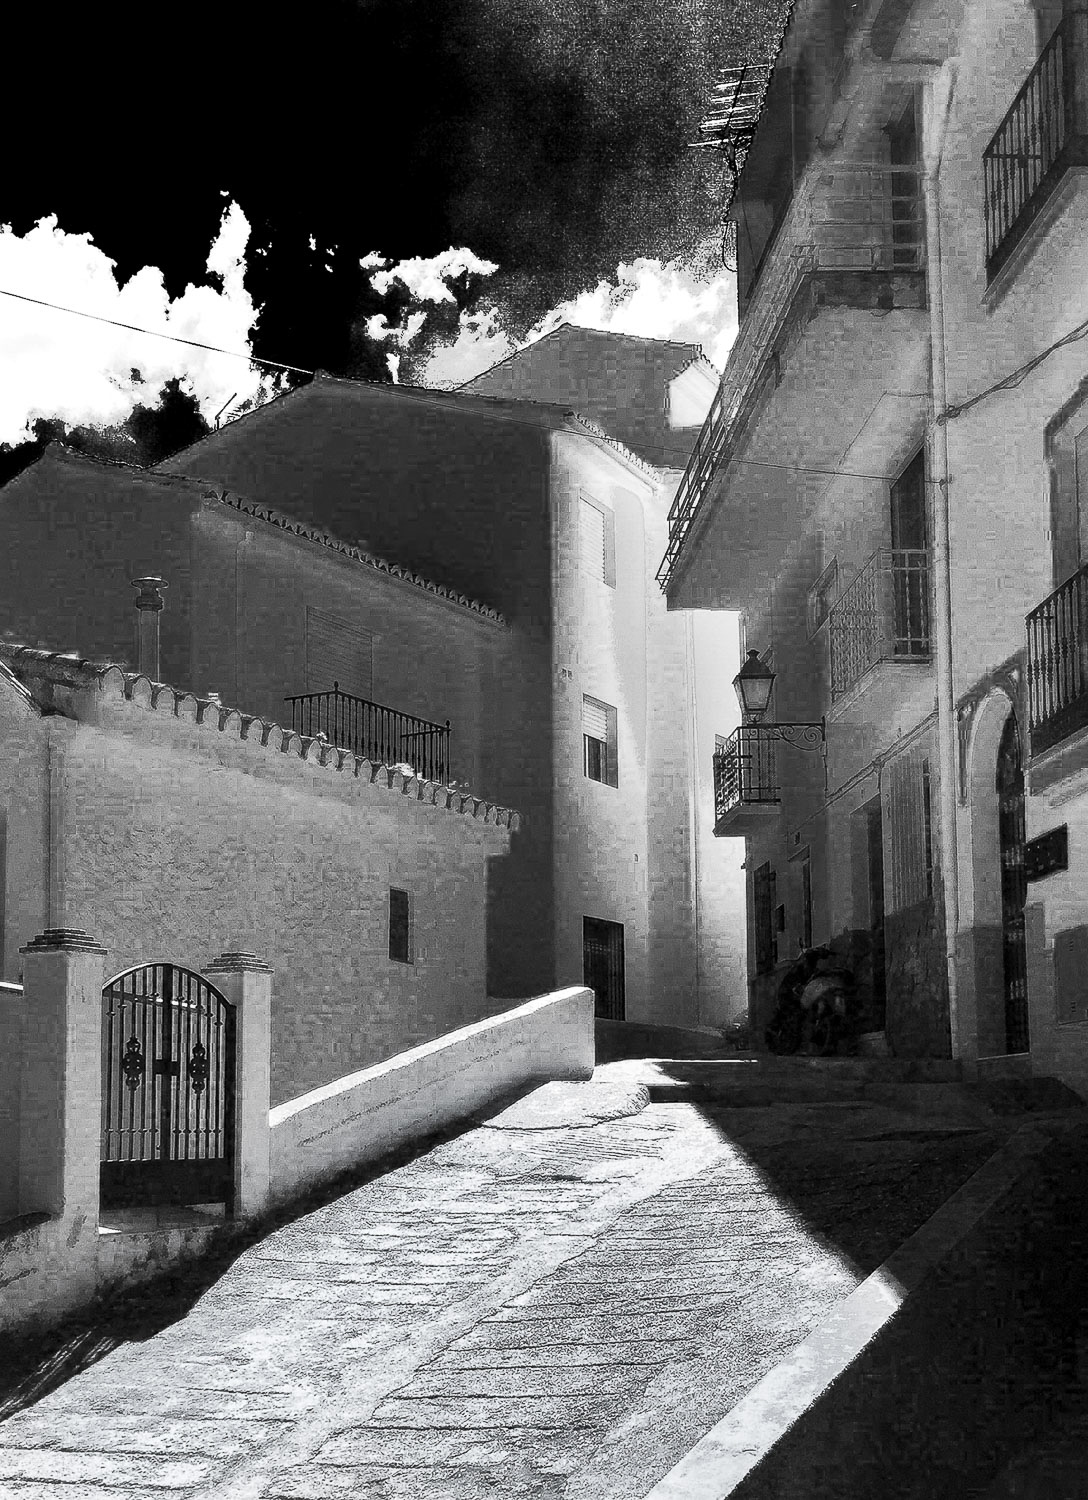 Spanish Village